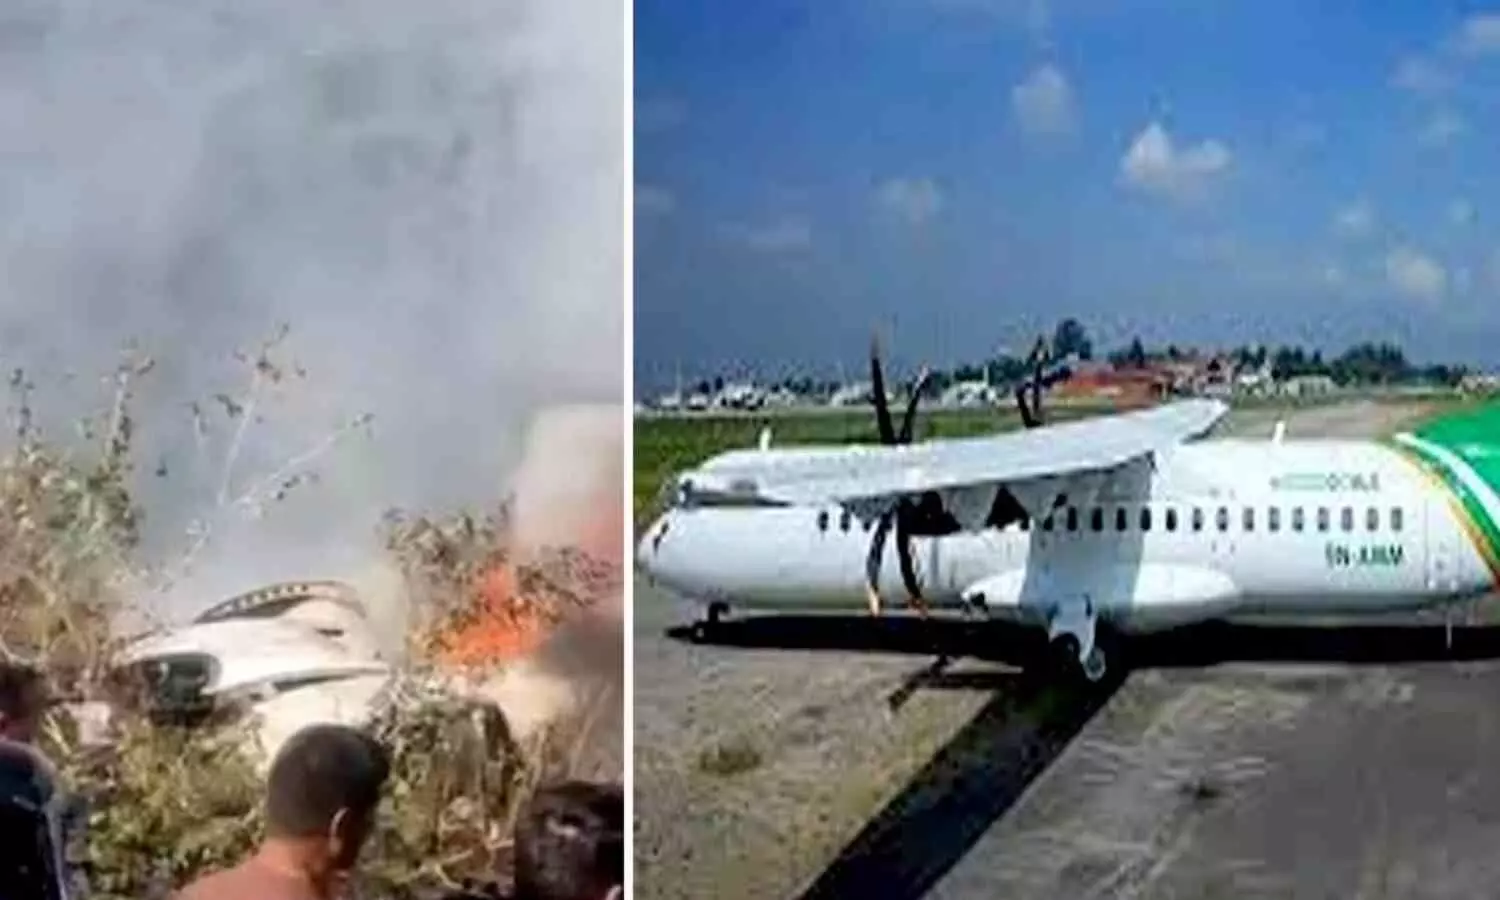 Nepal Aircraft Crash: नेपाल के पोखरा में बड़ा विमान हादसा, लैंडिंग से पहले हवा में ही लगी आग, प्लेन में 72 लोग सवार थे